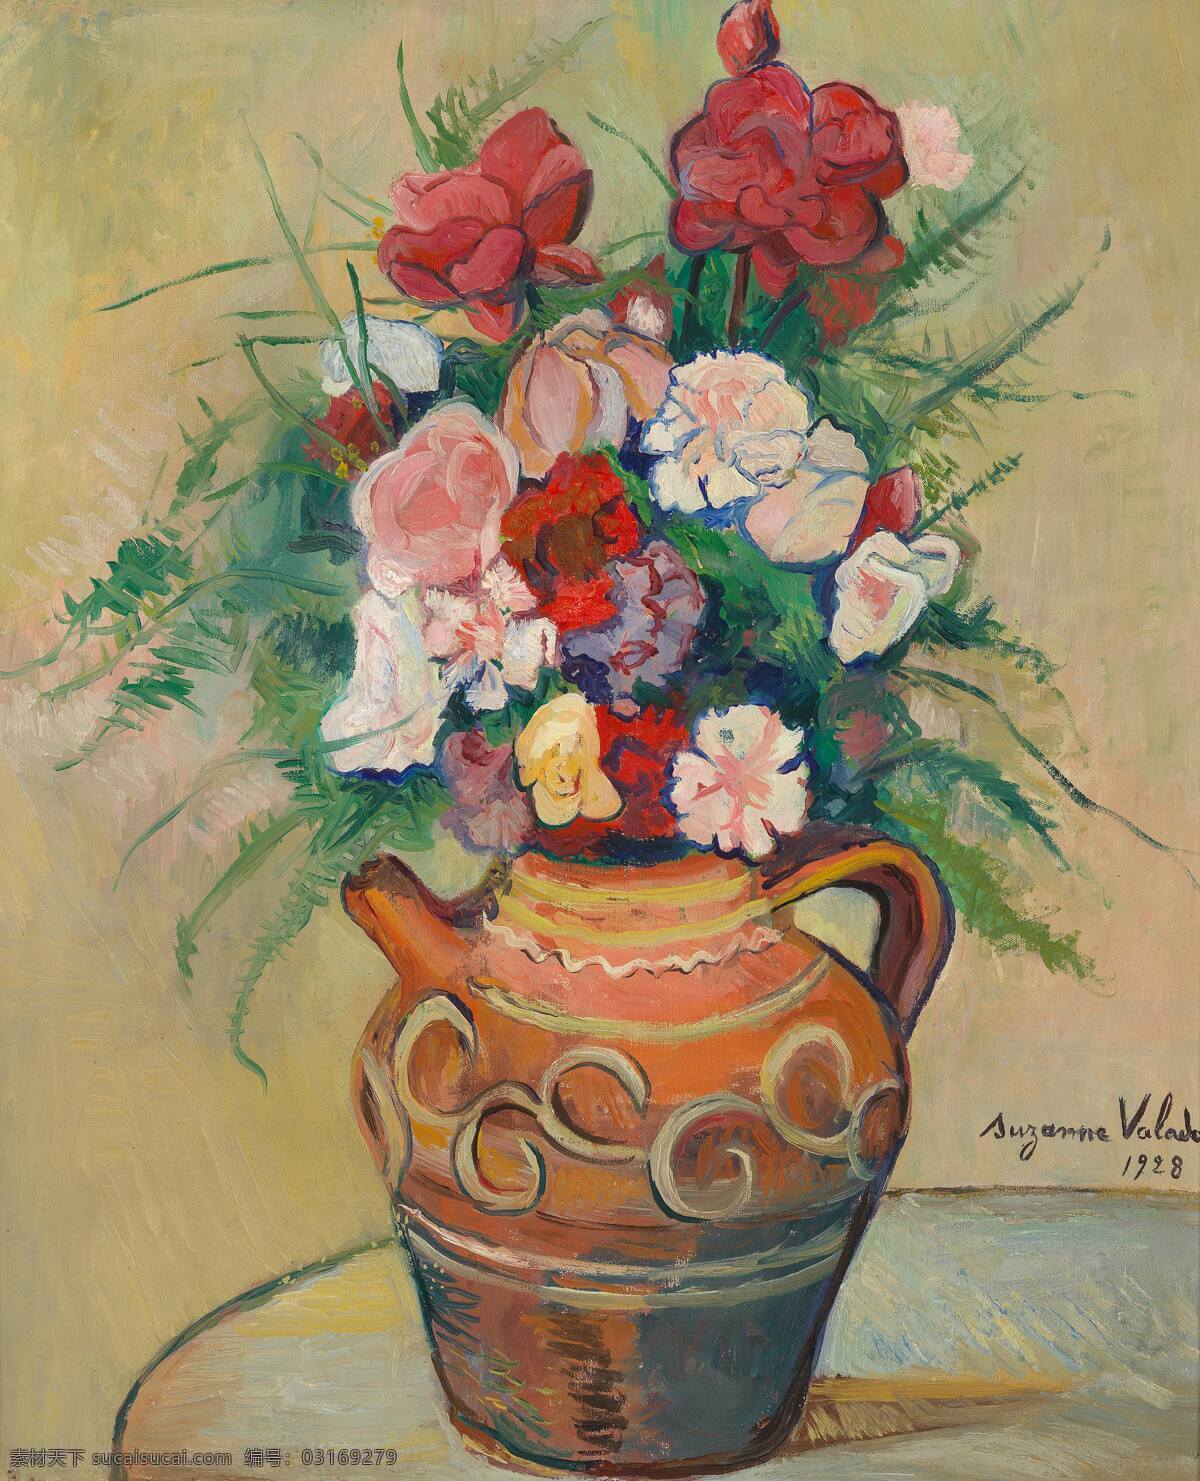 静物鲜花 混搭鲜花 玫瑰 康乃馨 罐子 桌子 20世纪油画 油画 文化艺术 绘画书法